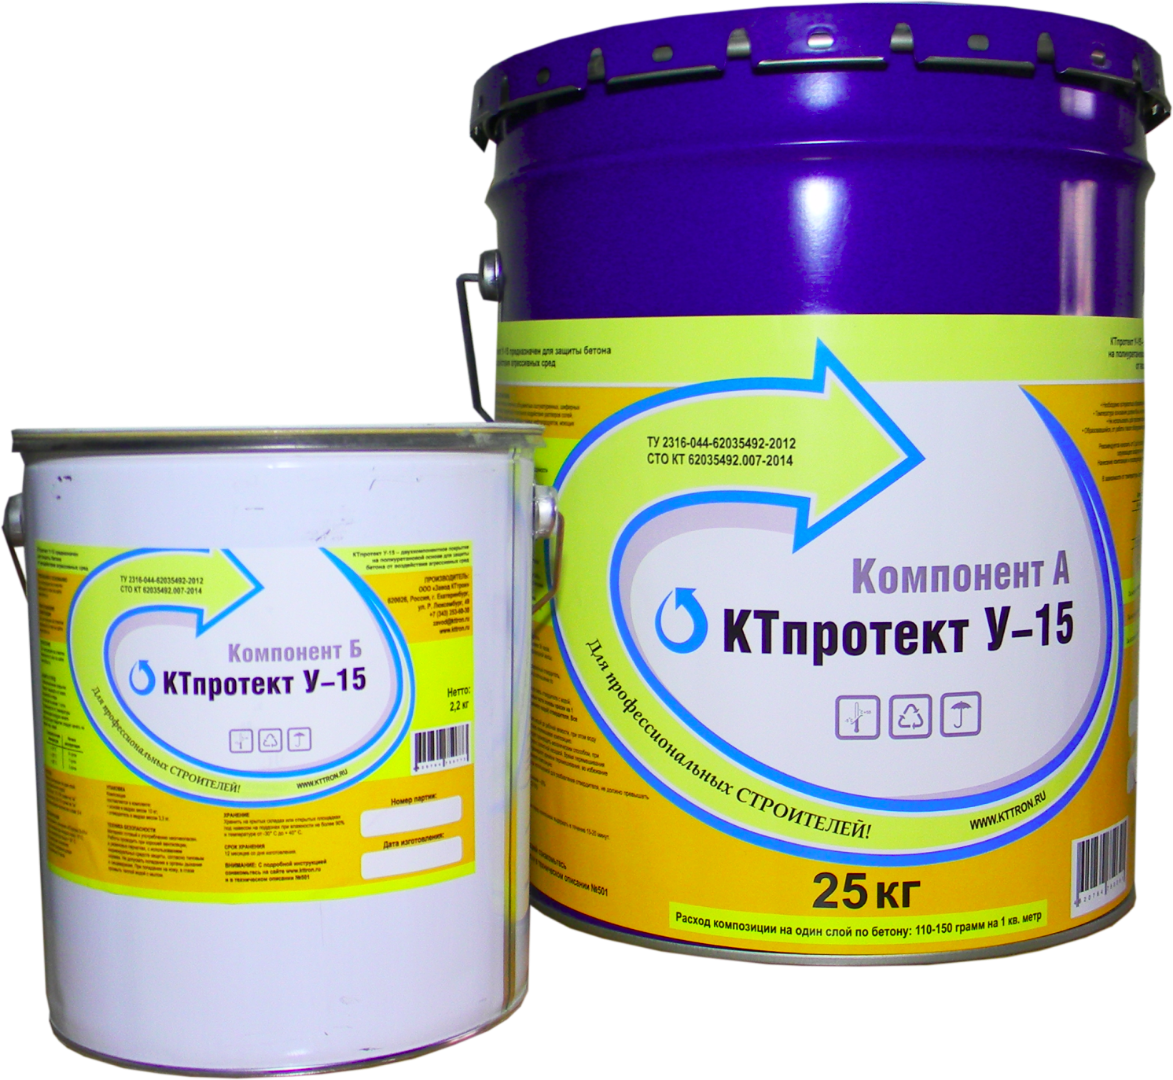 КТпротект У-15 (Защитная кислотостойкая акрилуретановая эмаль)